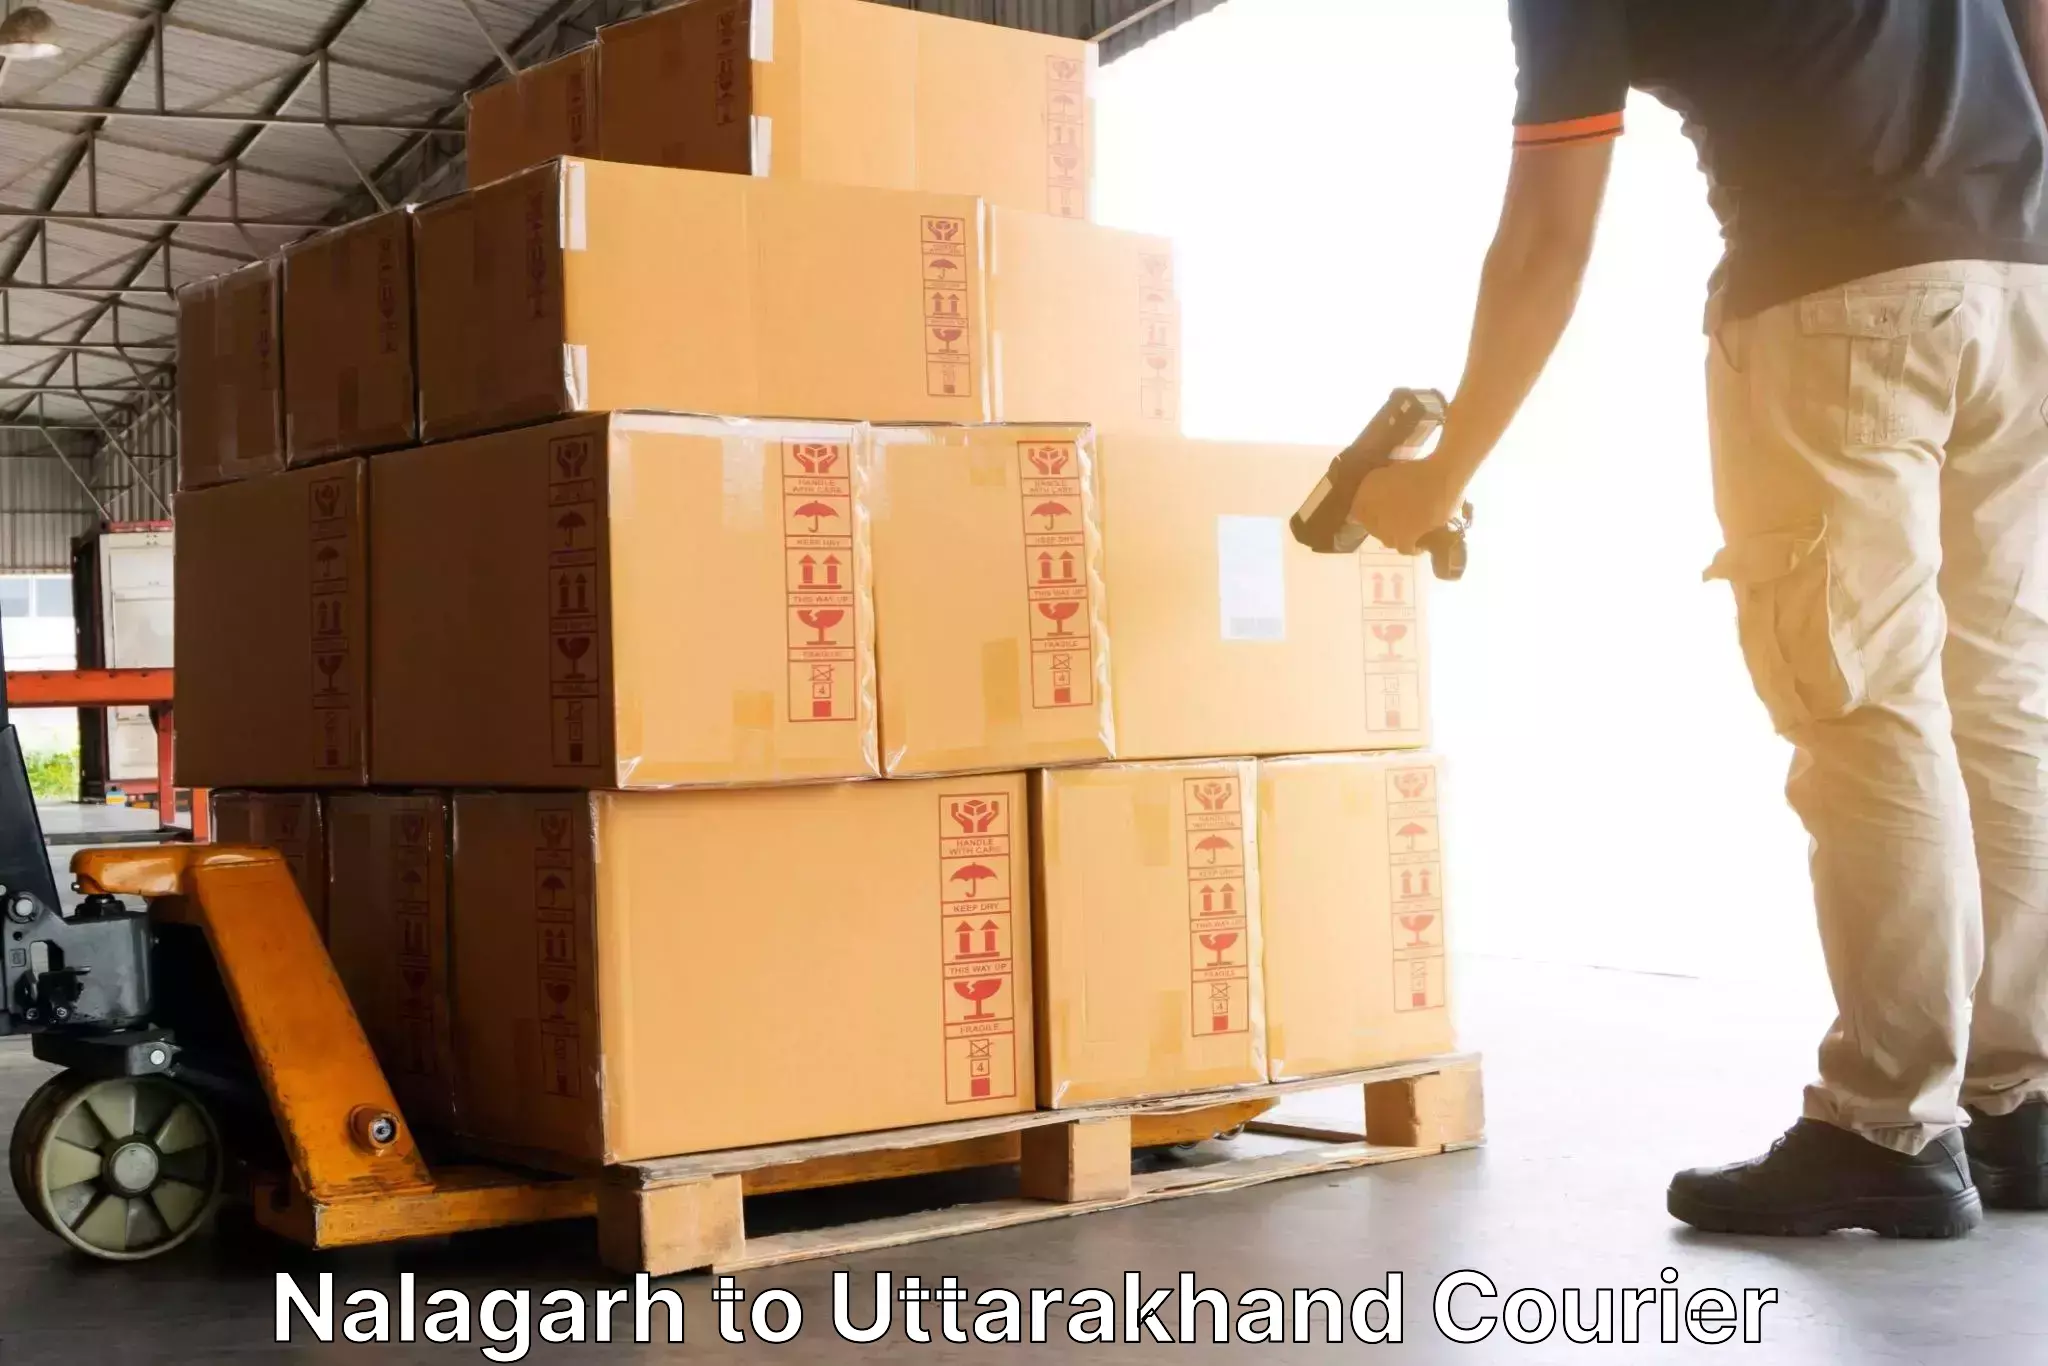 Efficient cargo handling Nalagarh to Bageshwar